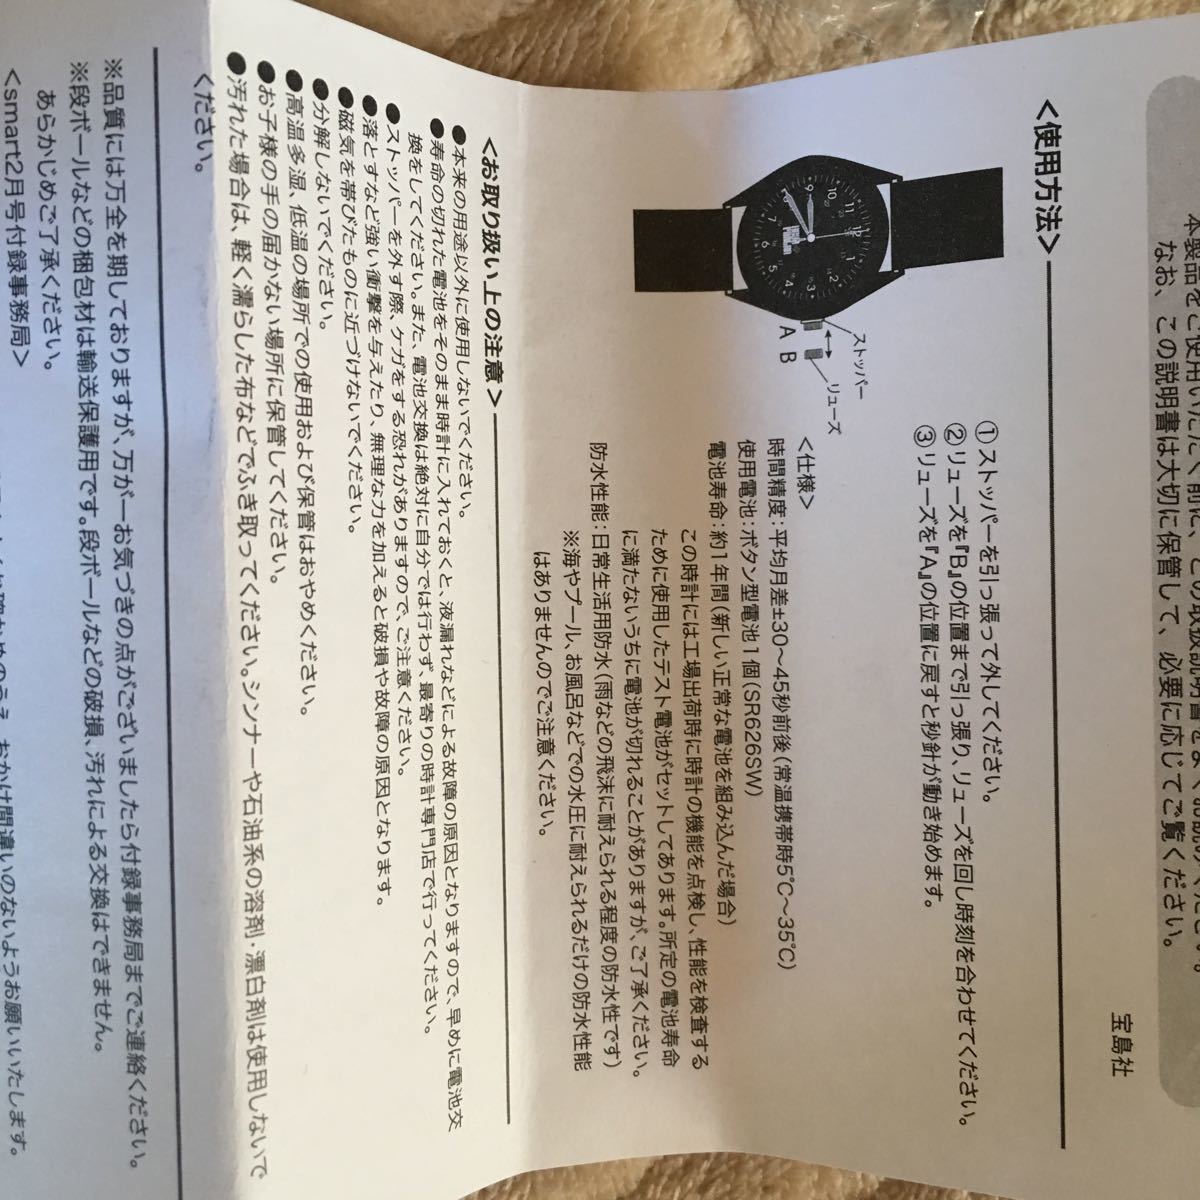 ヘッドポーターケース入りオールブラックミリタリー腕時計東京ジャパン新品未使用です。_画像3